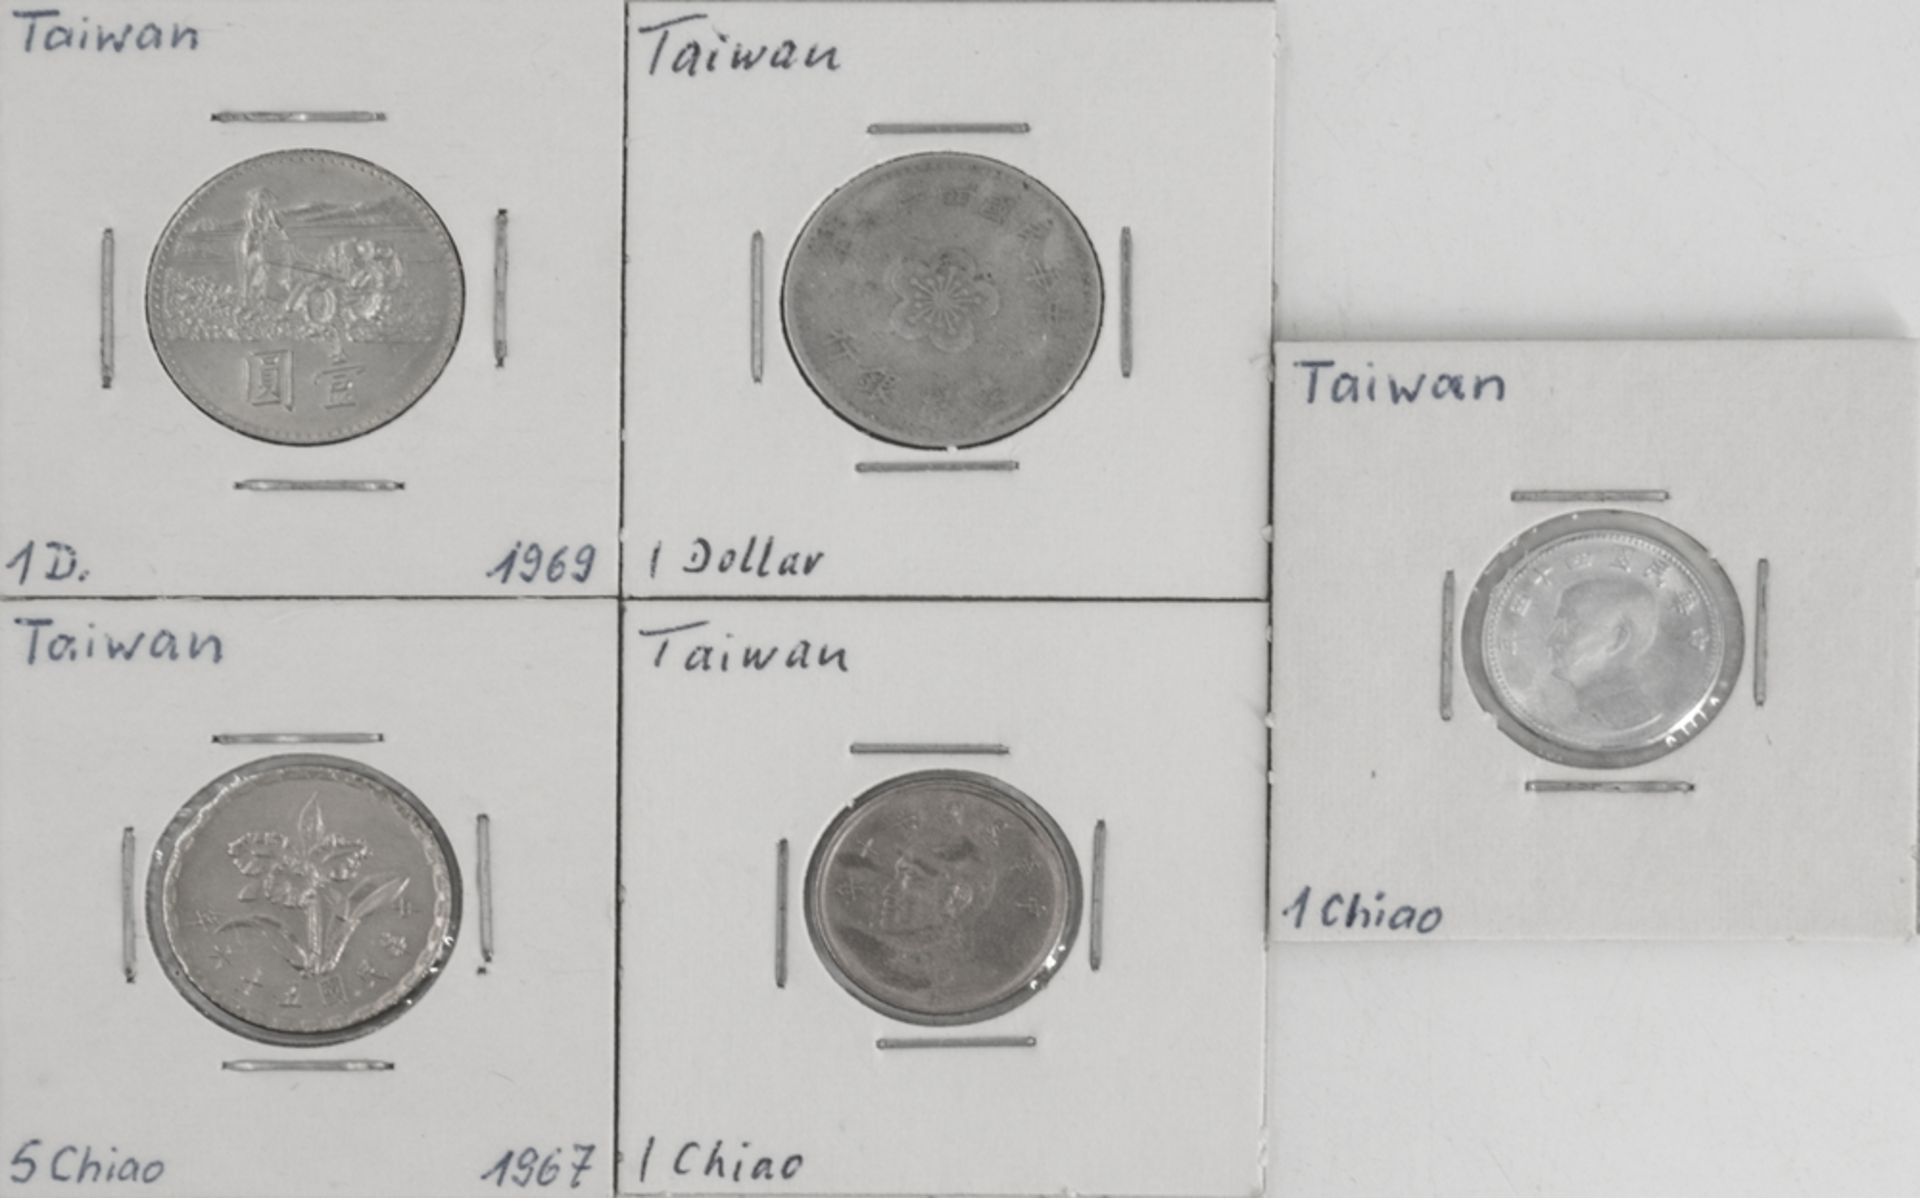 Taiwan, Lot Münzen, bestehend aus: 2 x 1 Dollar, 2 x 1 Chiao und 1 x 5 Chiao. Erhaltung: ss.